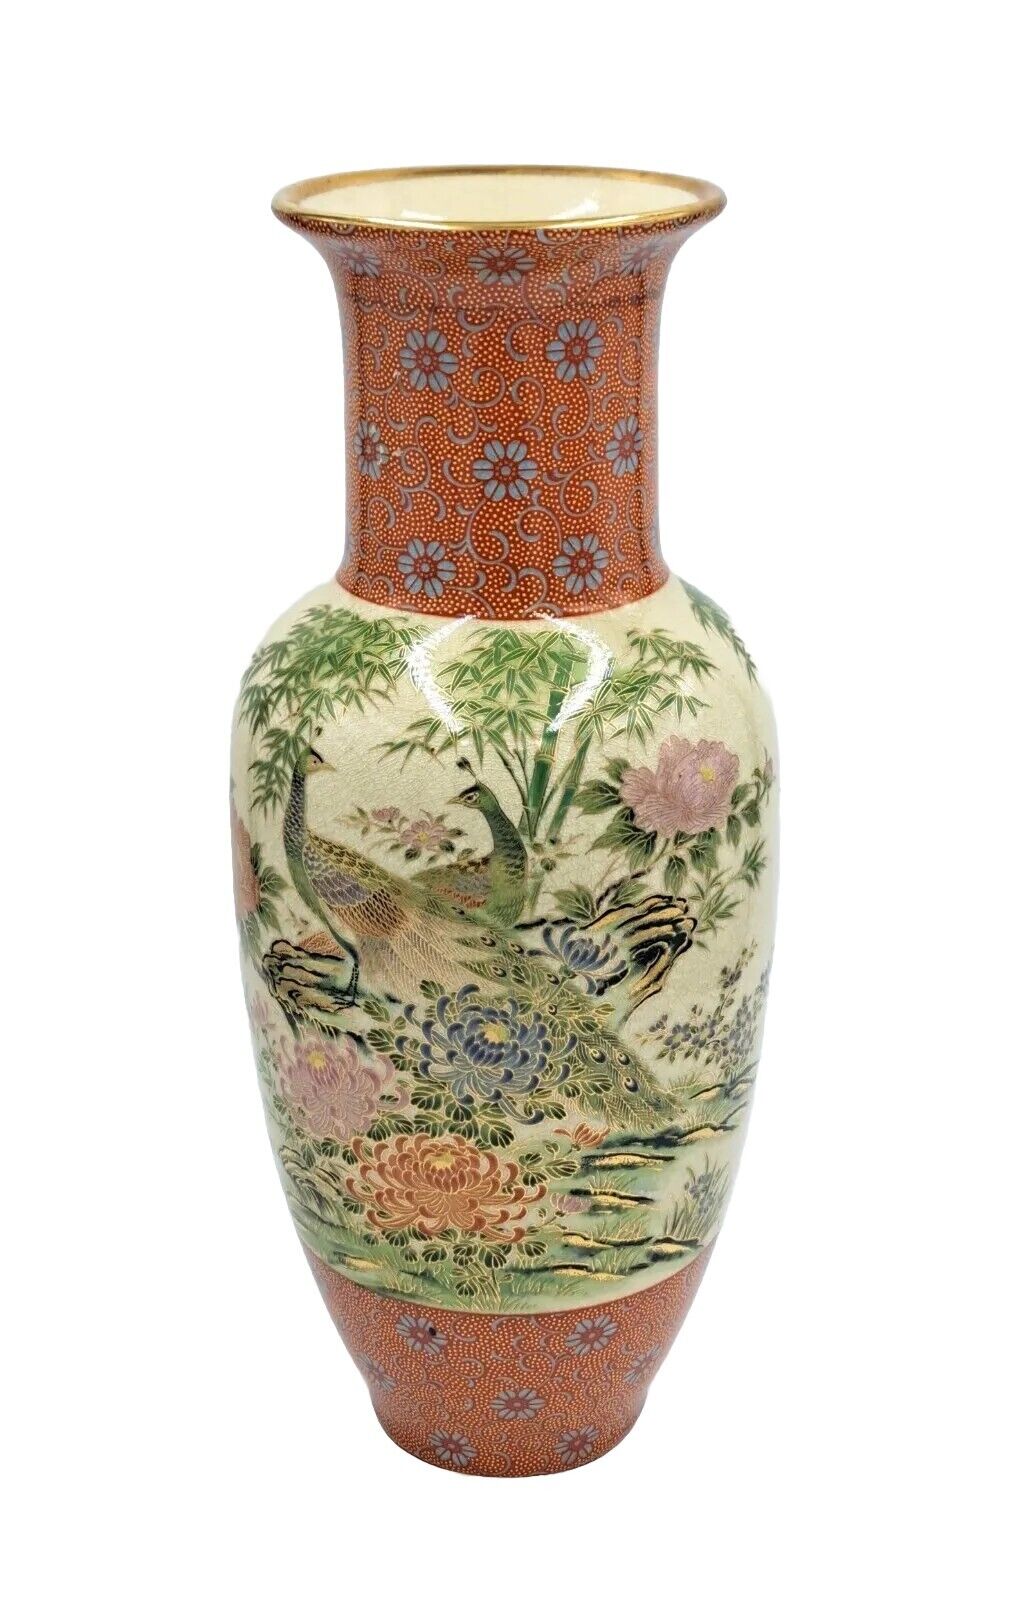 Vintage Shibata Porcelain Japanese Vase Peacocks Floral Gold Trim 12\